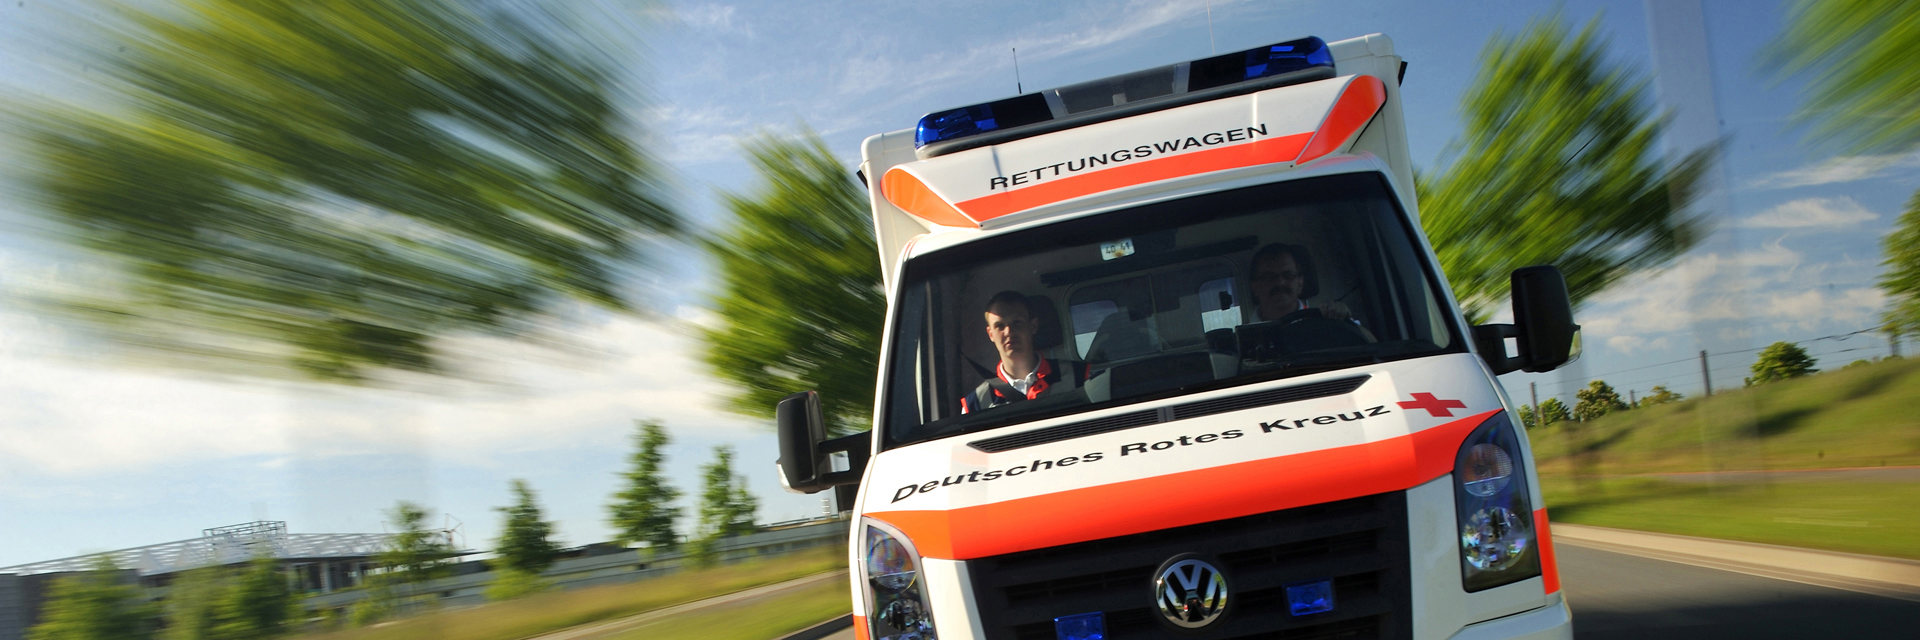 Notfallset zur Erstickungshilfe in Niedersachsen - Wallenhorst